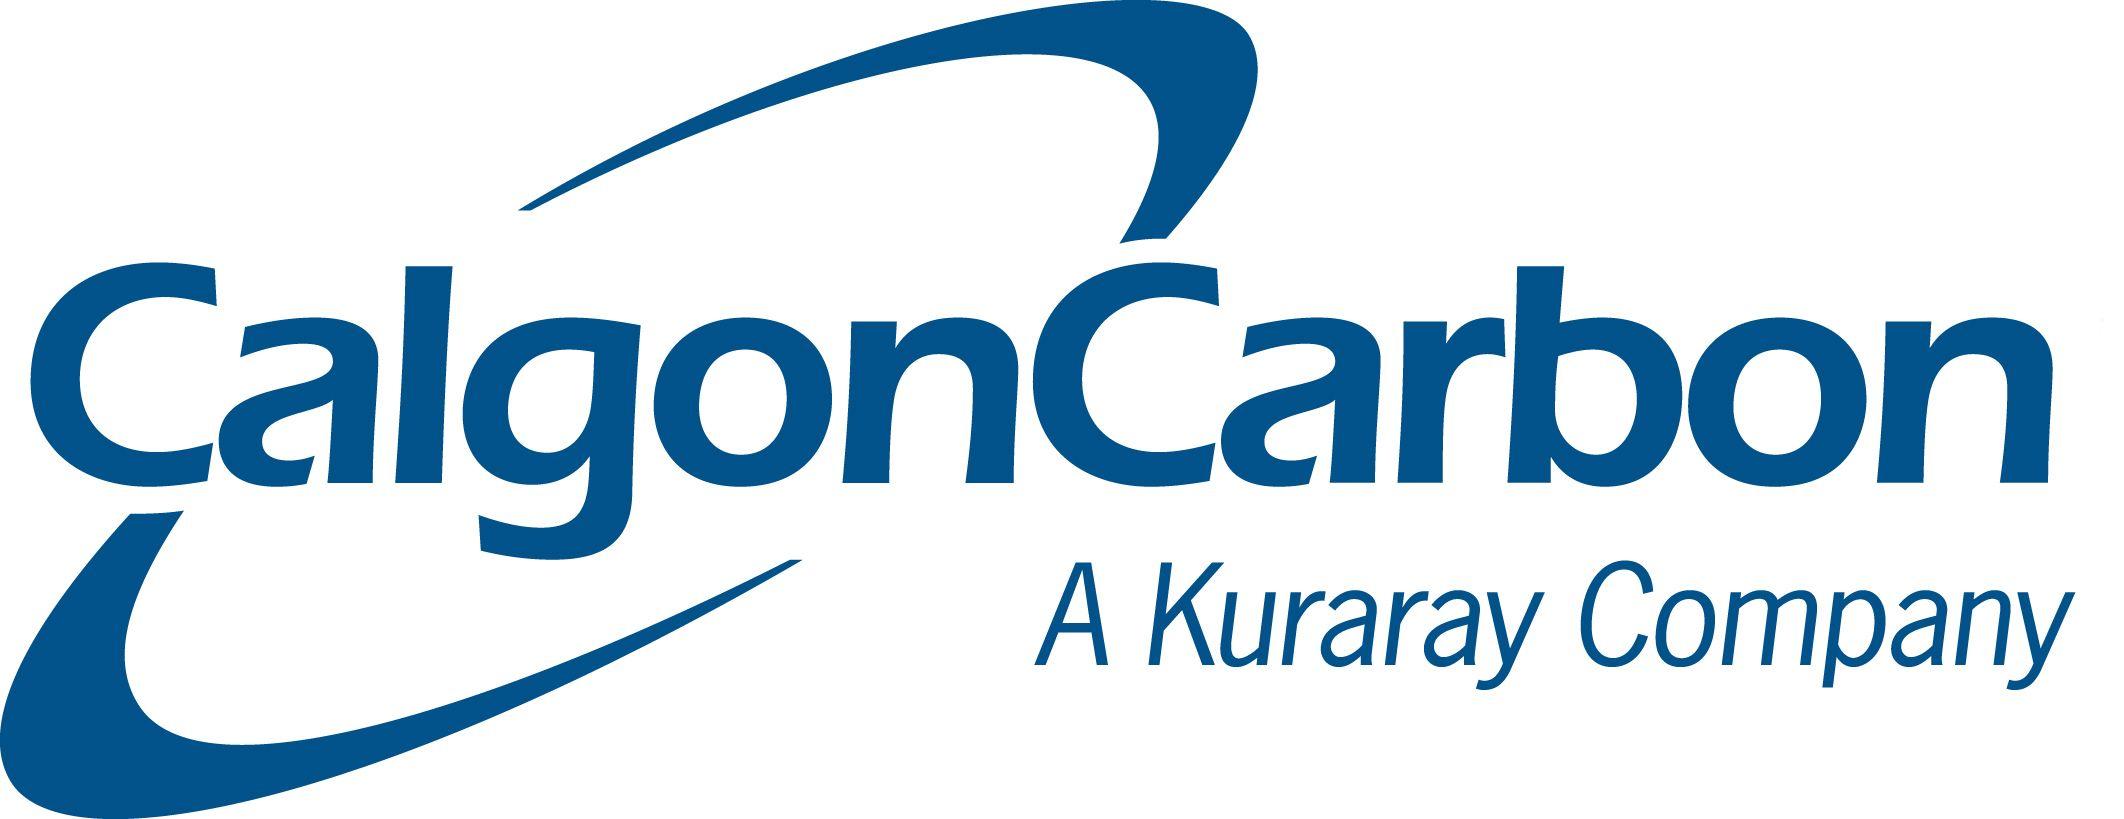 Kuraray Logo - News